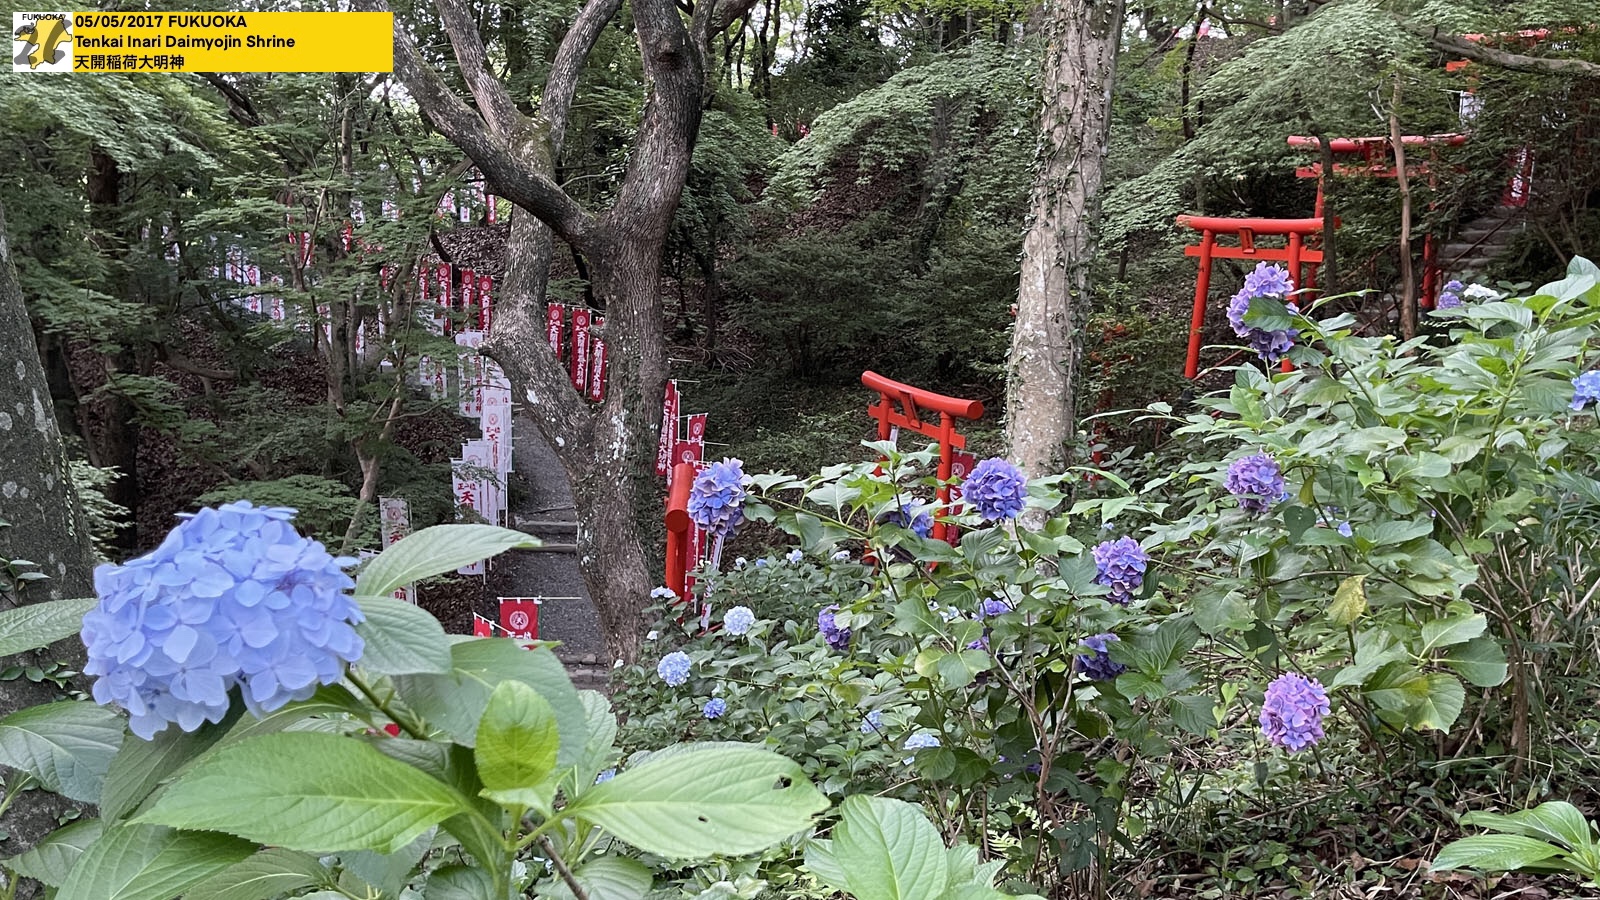 Tenkai Inari Daimyojin Shrine